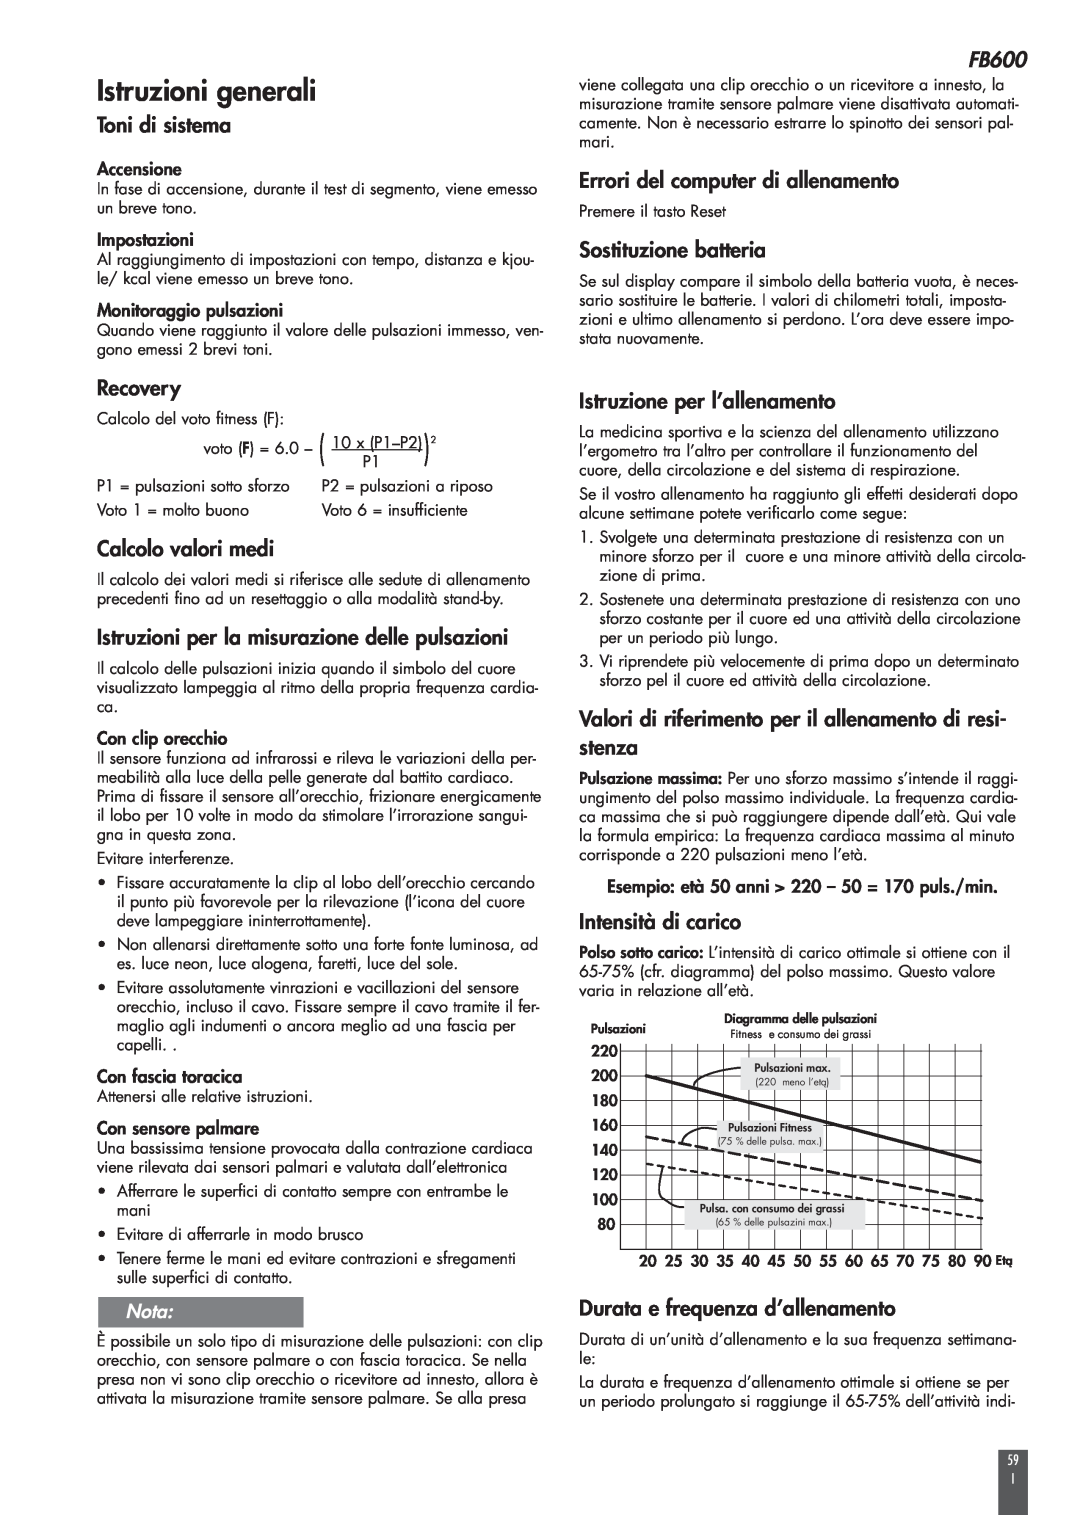 Kettler FB600 manual Istruzioni generali, Diagramma delle pulsazioni 